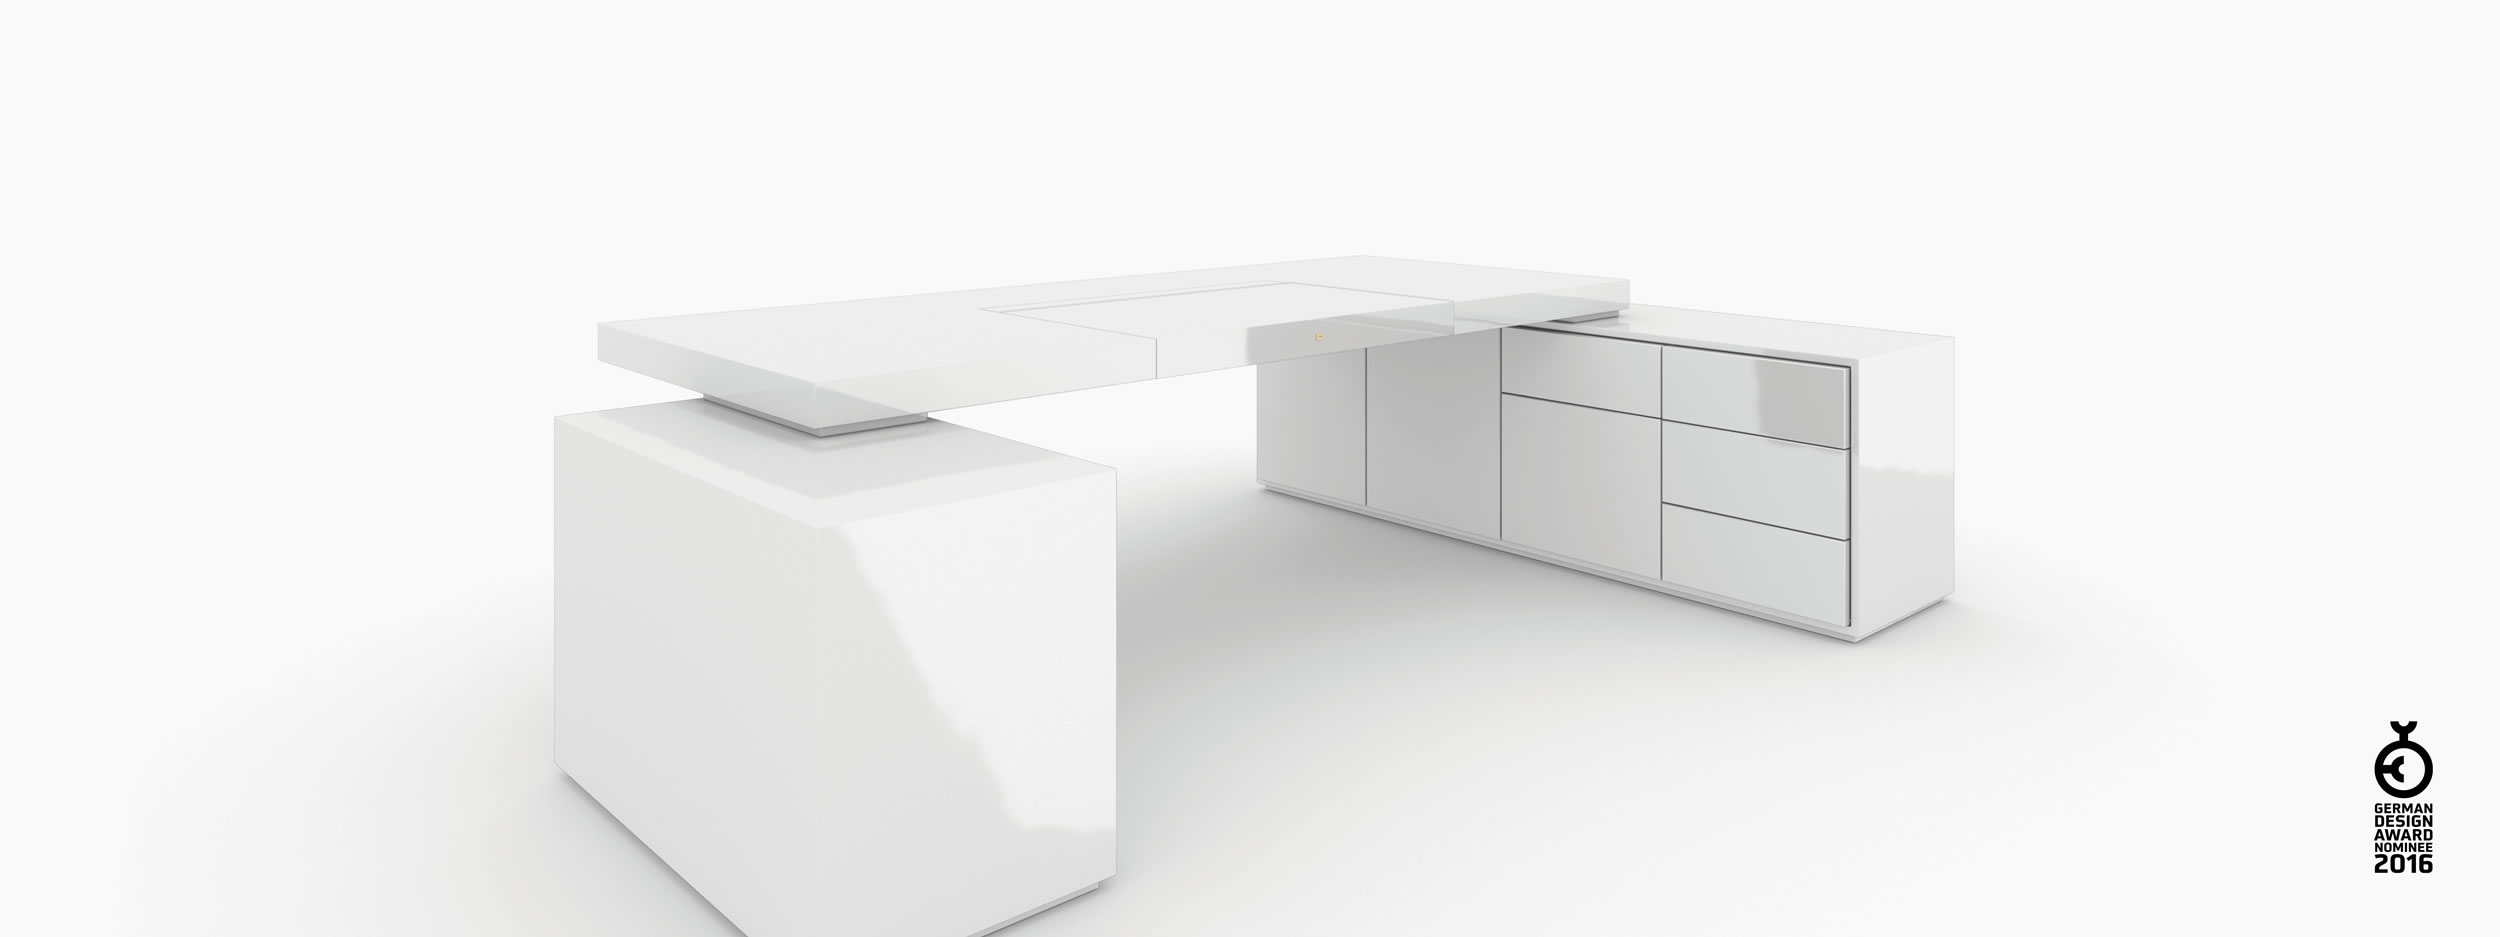 Schreibtisch scheiben und quader weiss interior design Chefzimmer simple furniture Schreibtische FS 95 FELIX SCHWAKE RECHTECK